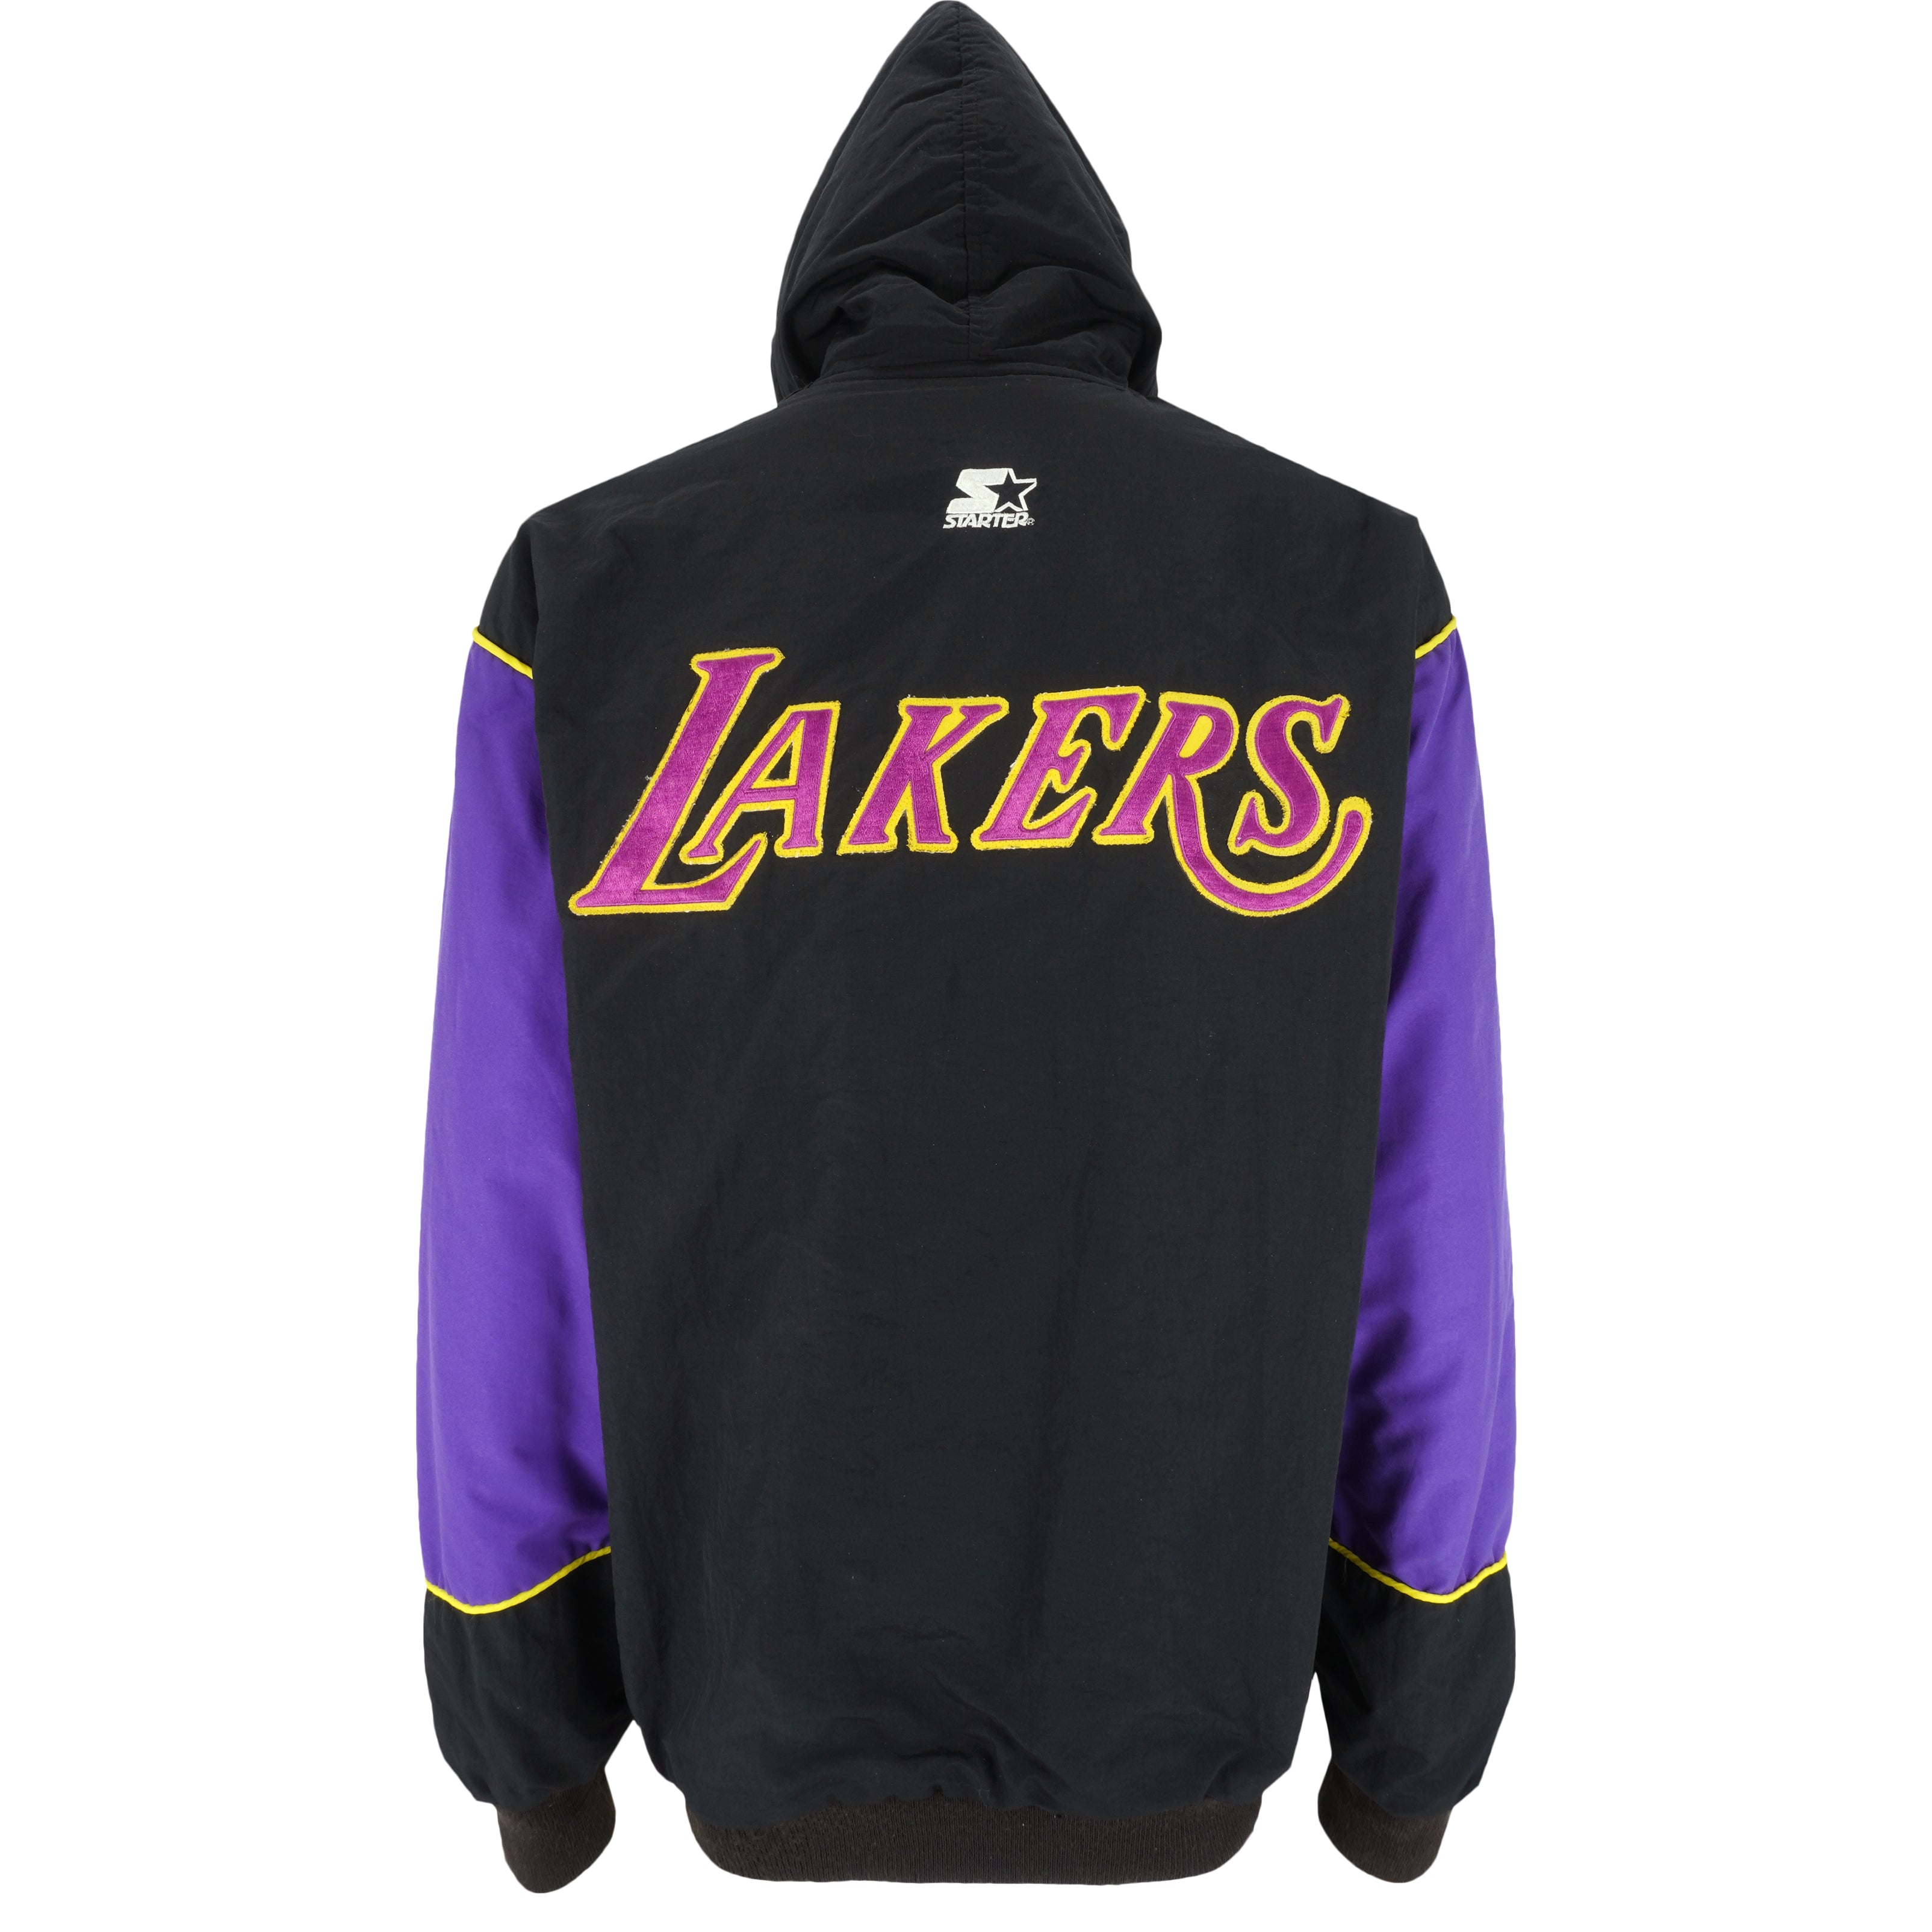 Vintage Nike NBA Los Angeles Lakers Hoodie Sweatshirt Size XL 1990s